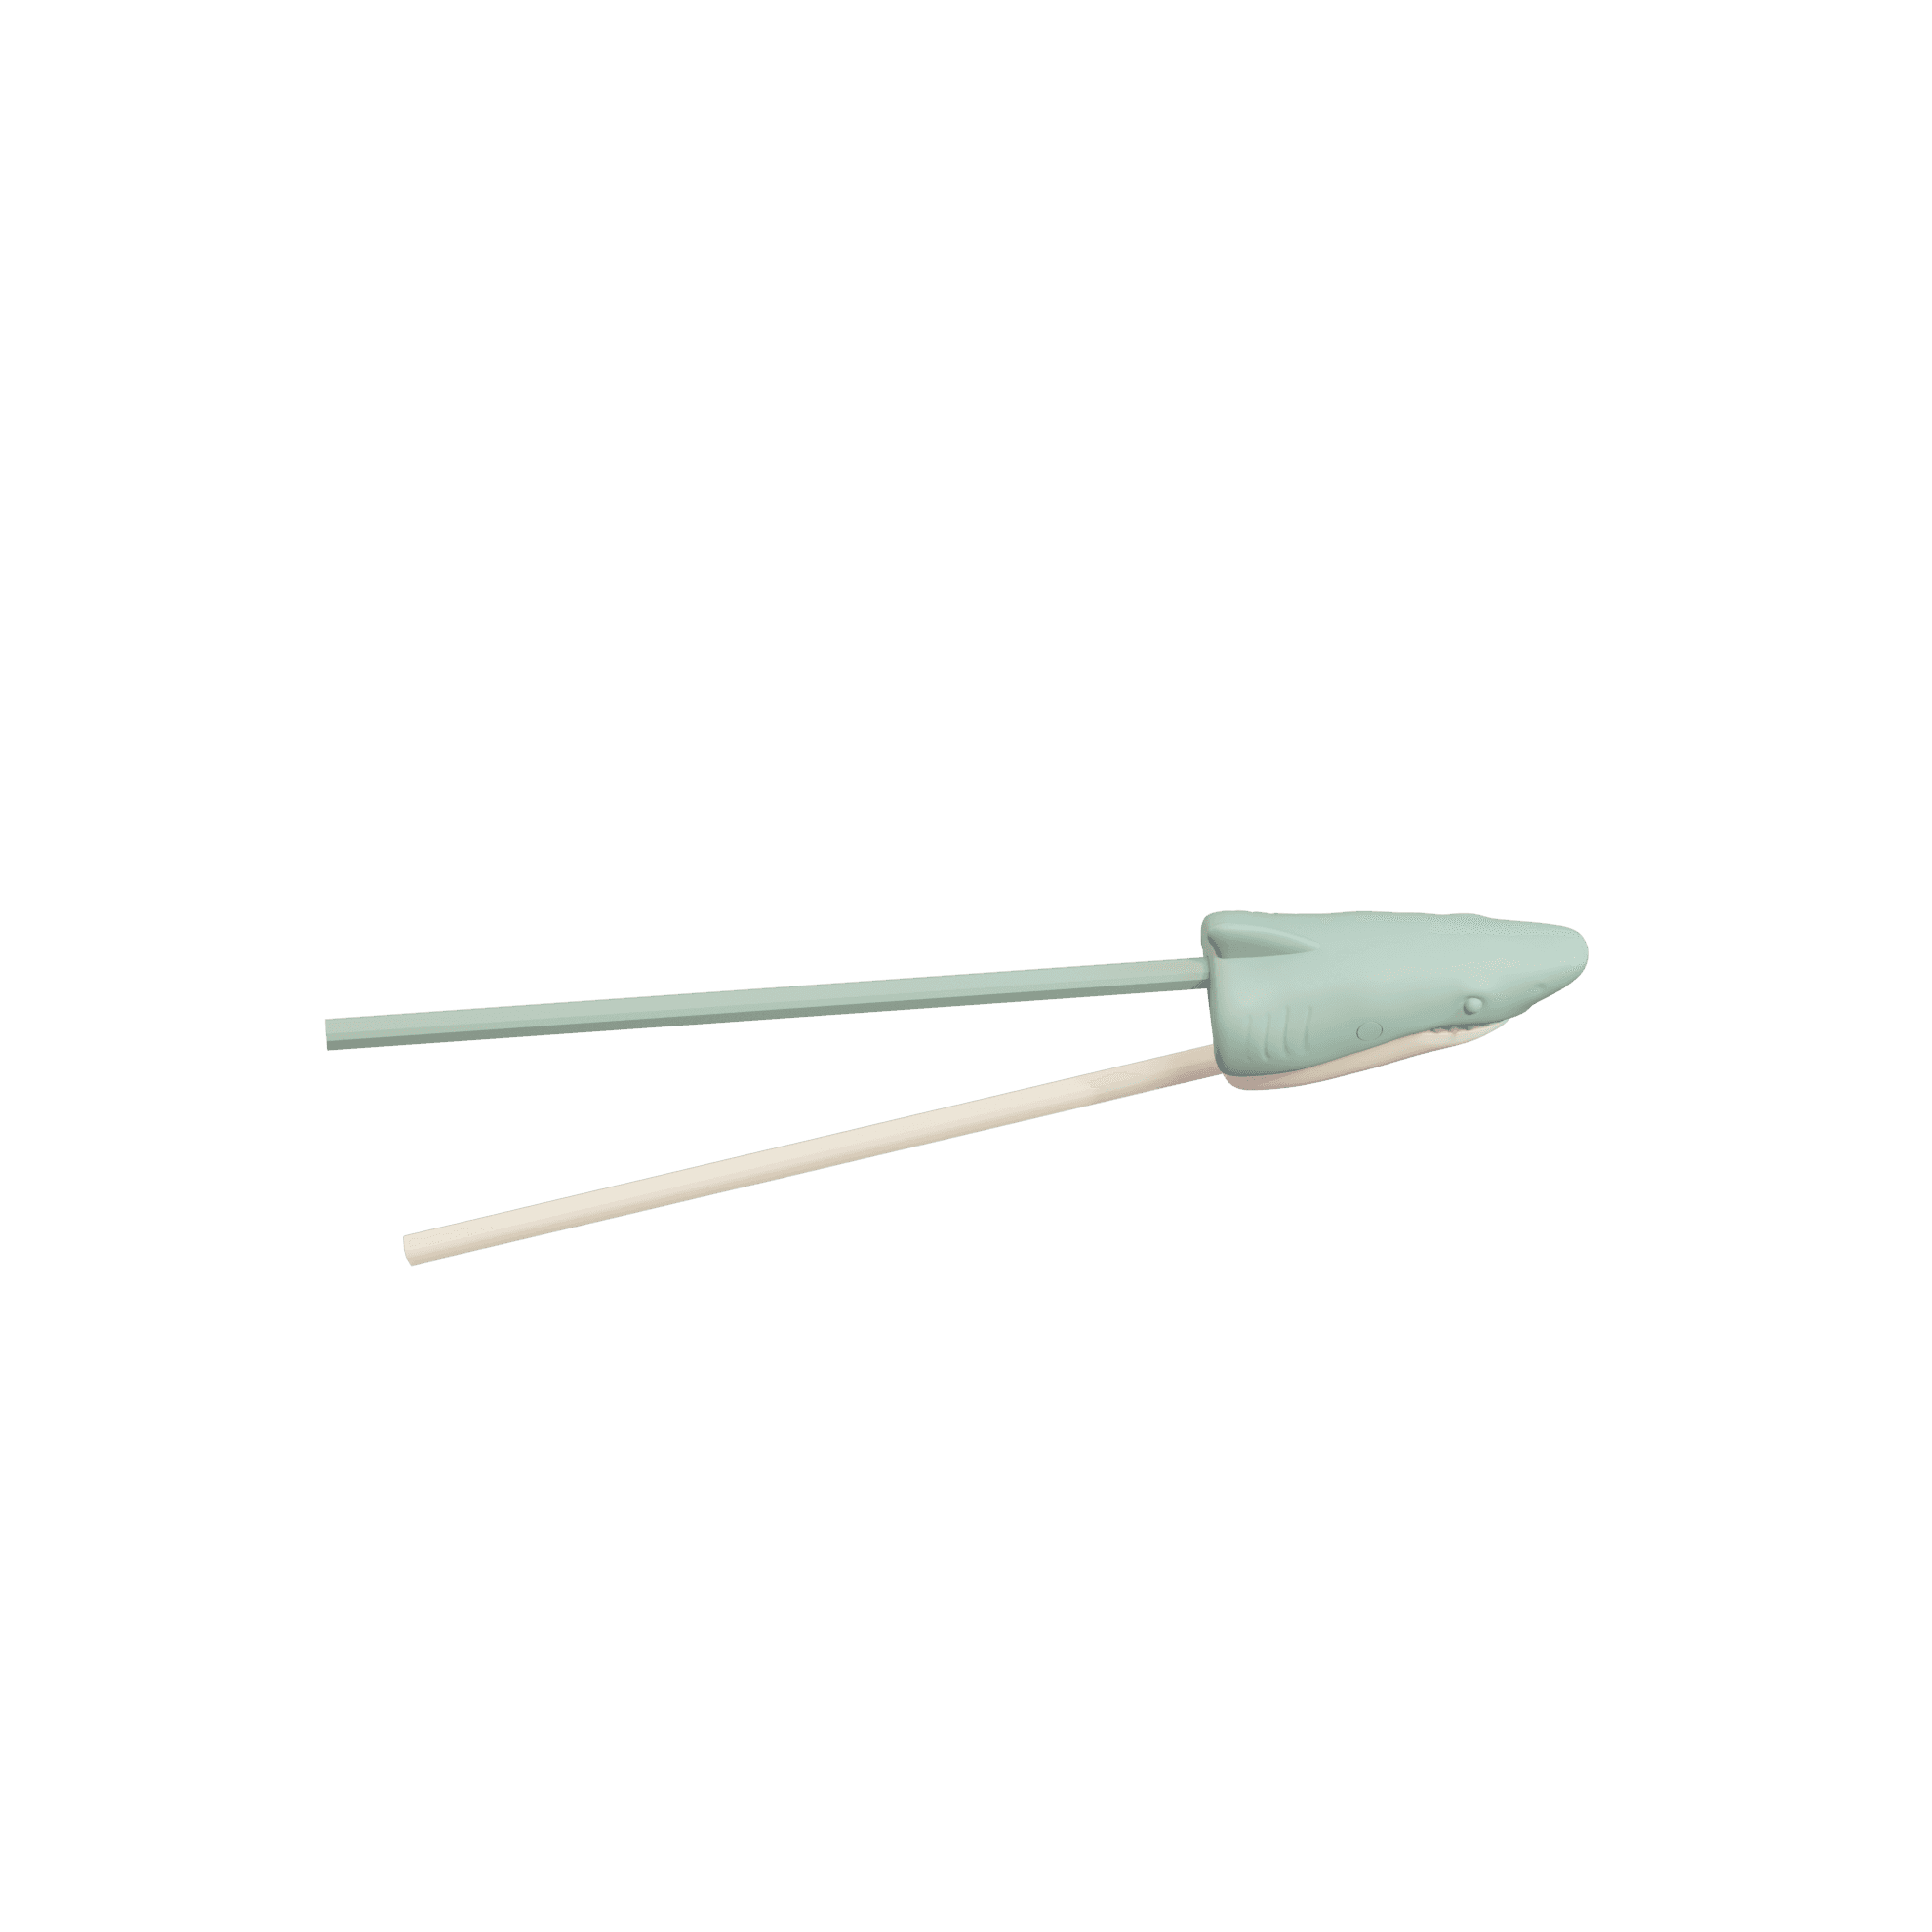 Shark Chopsticks Helper 3d model